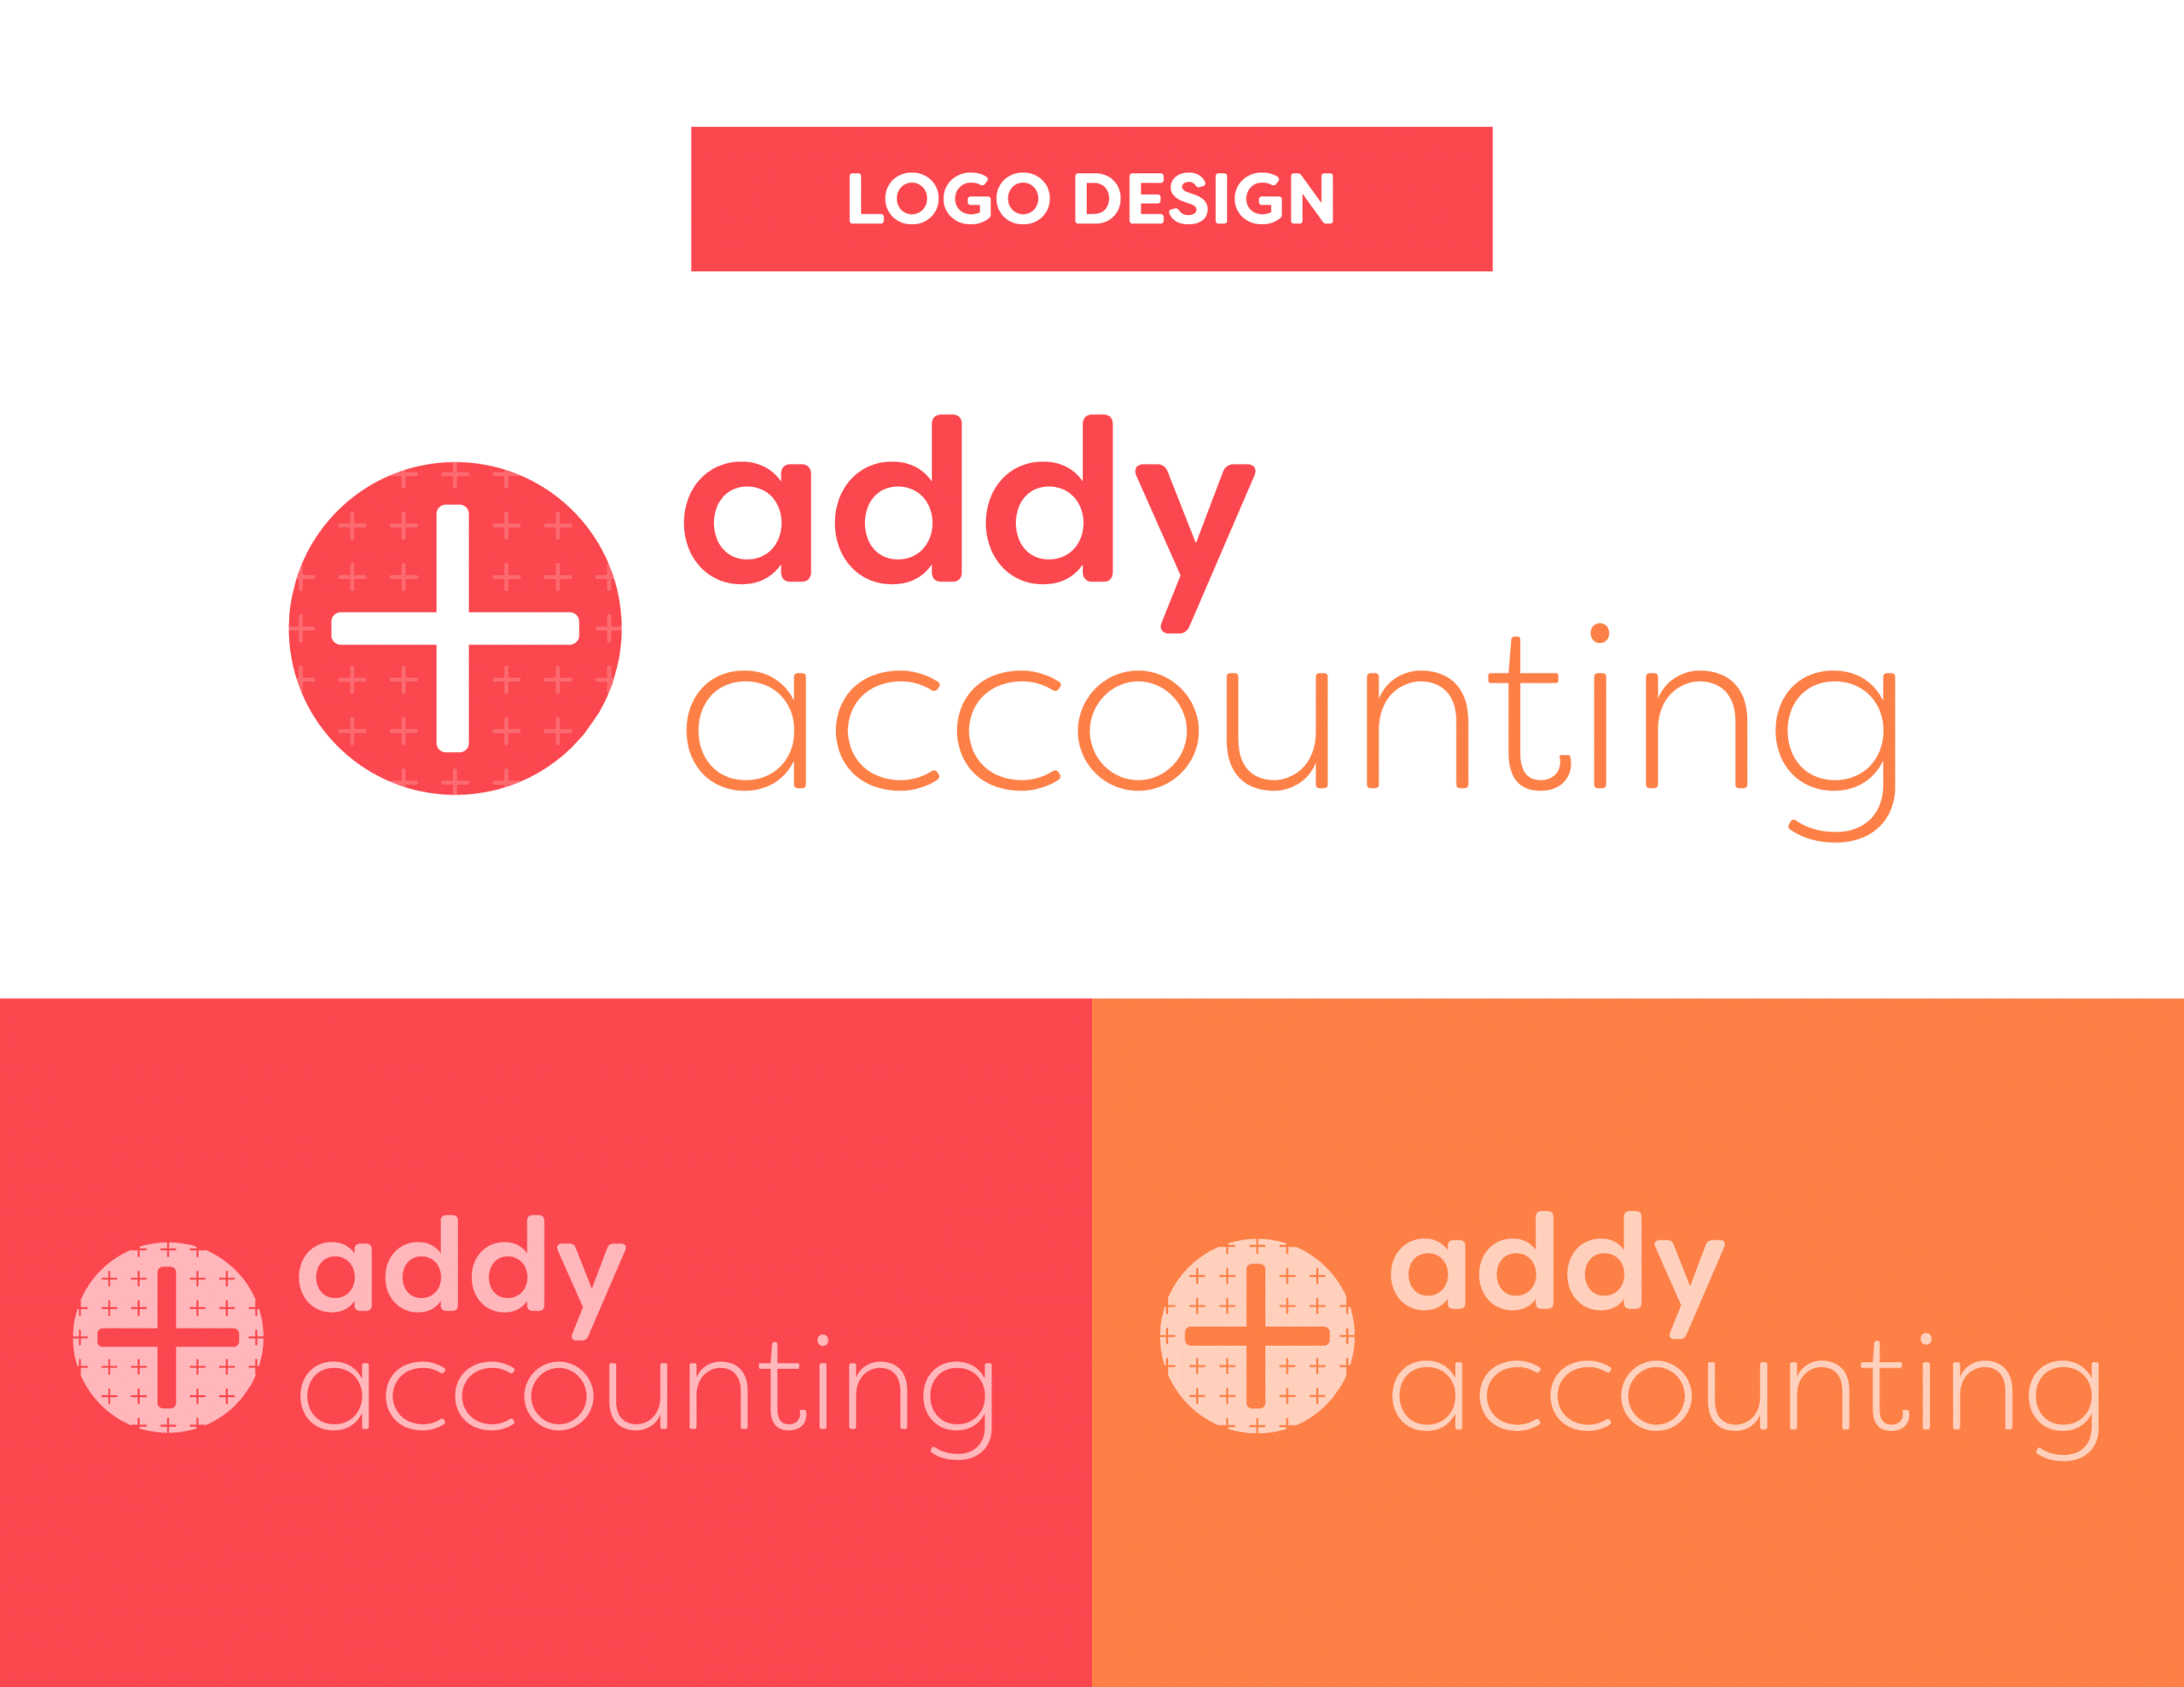 01AddyAcc_Logo Design